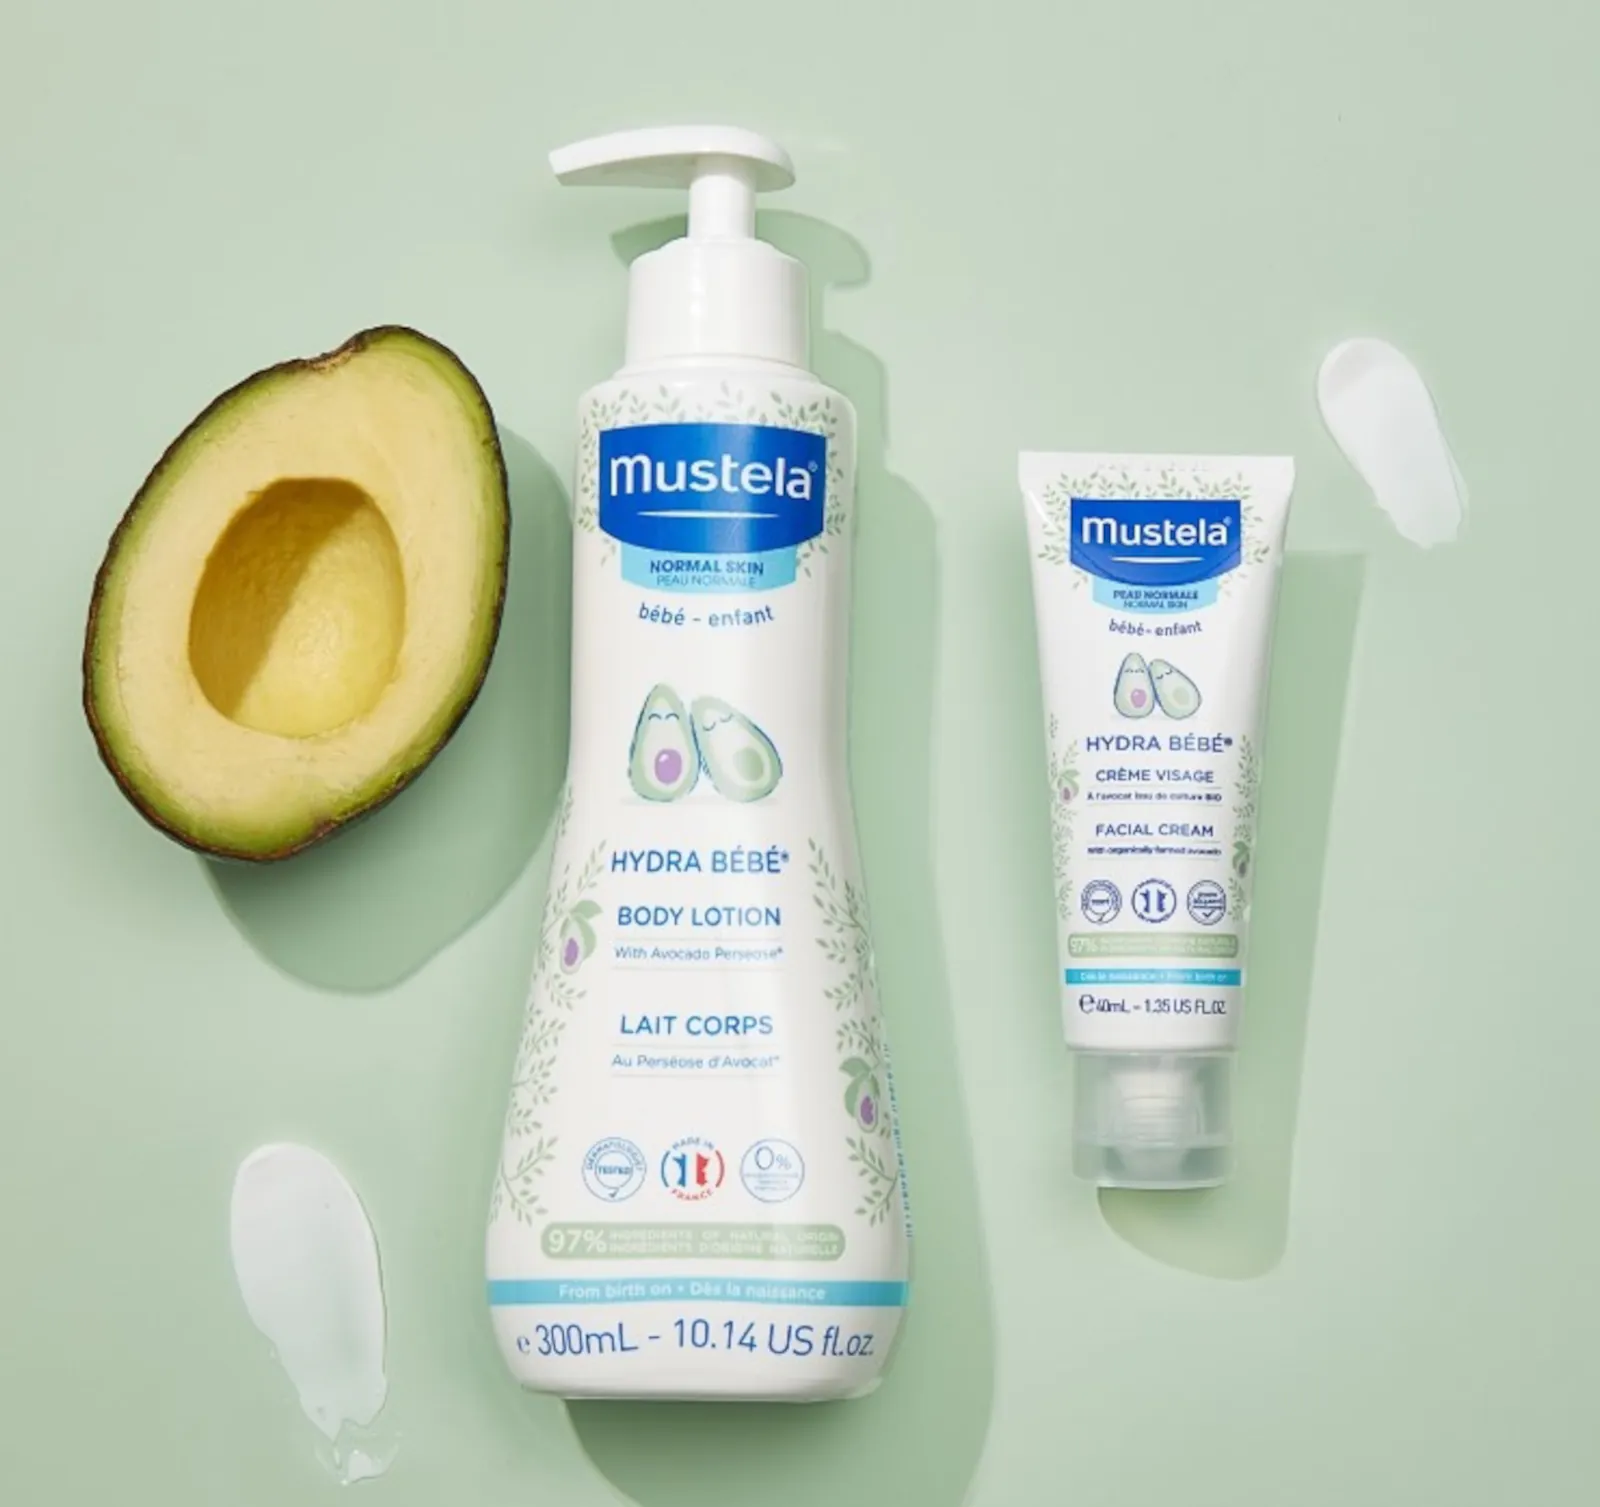 Mustela hydra bébé facial cream for baby 40ml